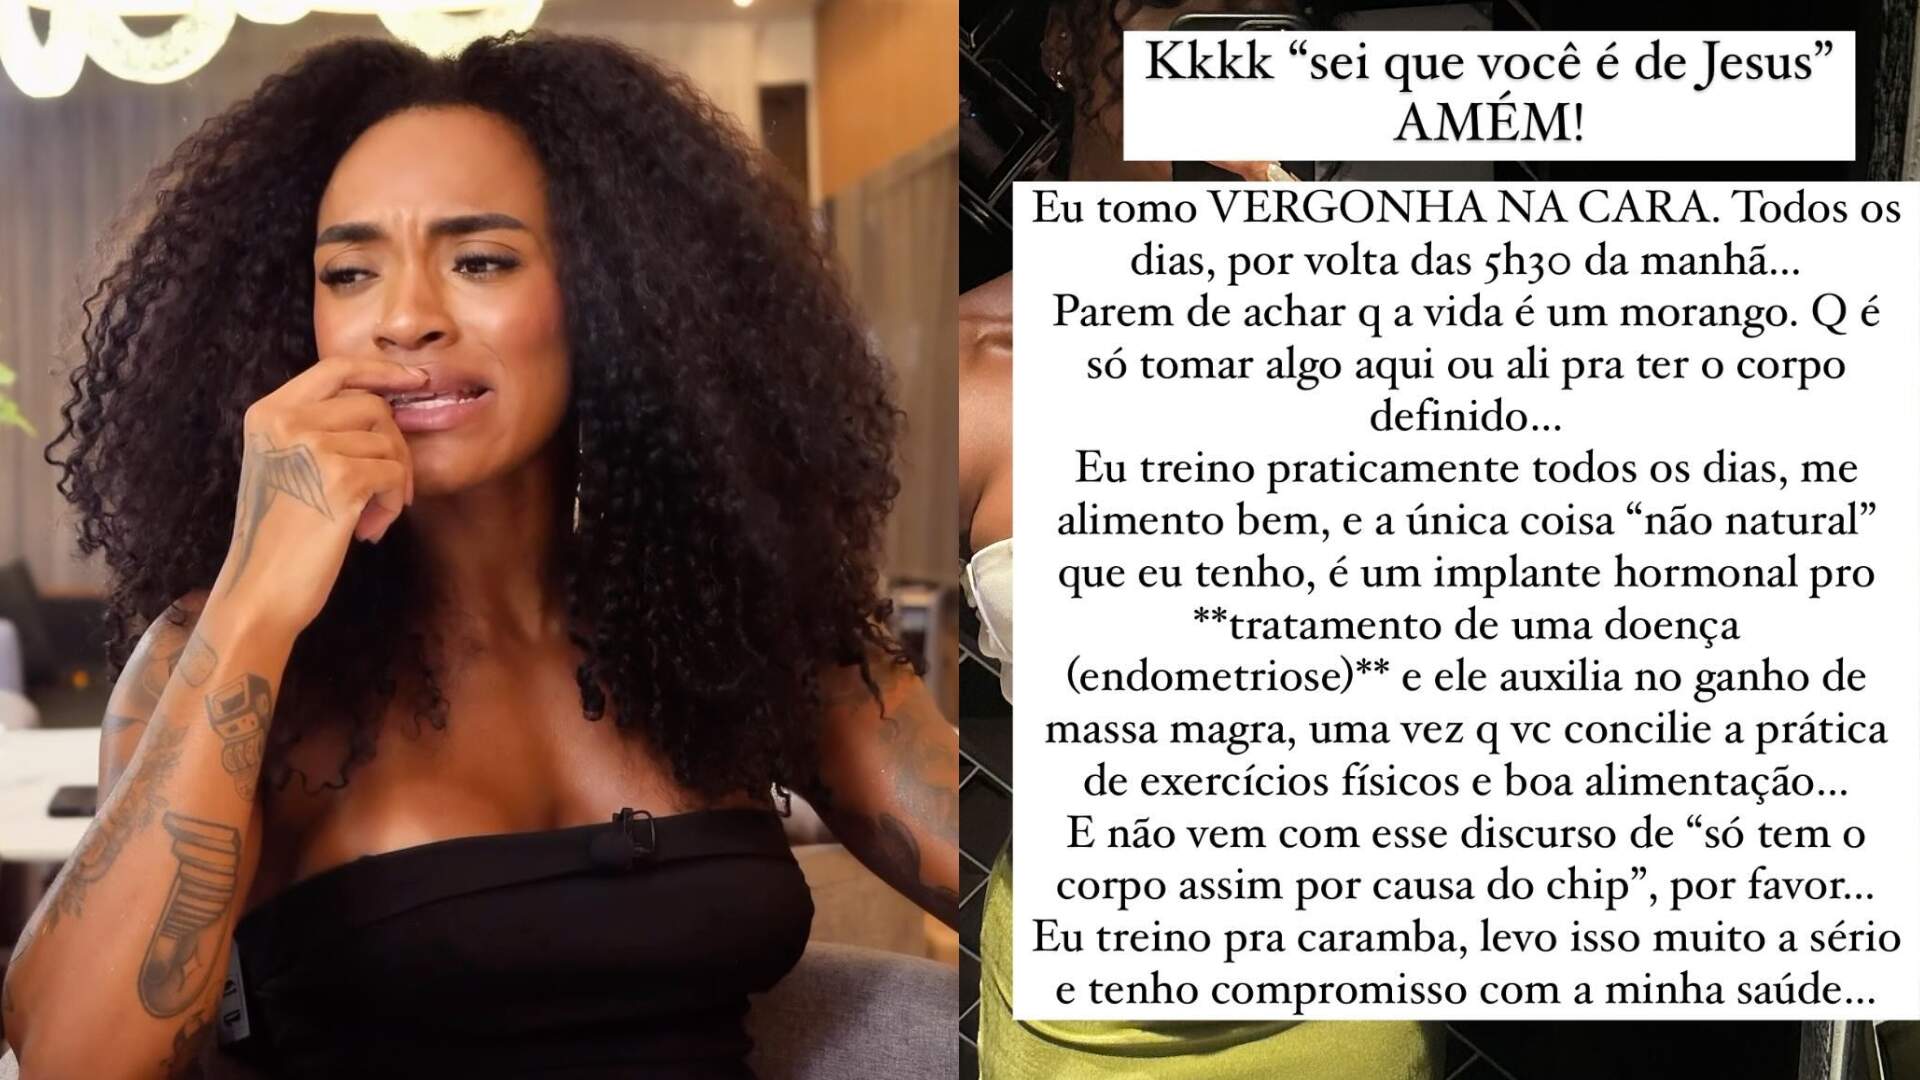 Patrícia Ramos se revolta e dá resposta afiada sobre uso de hormônios para manter o corpo definido - Metropolitana FM